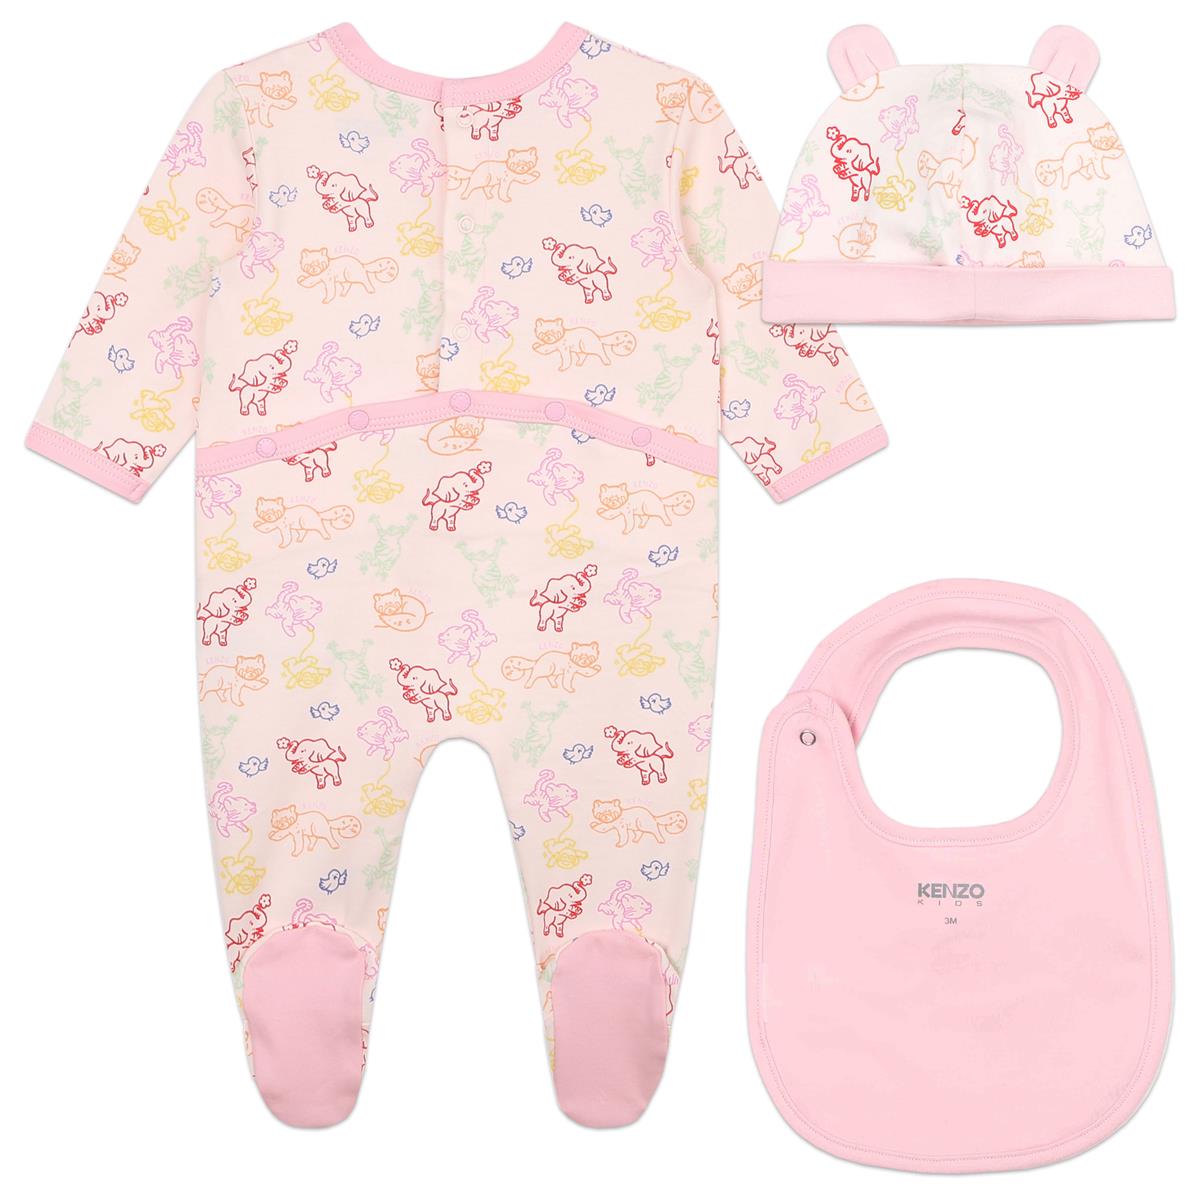 Baby Girls Pink Printed Babysuit Set